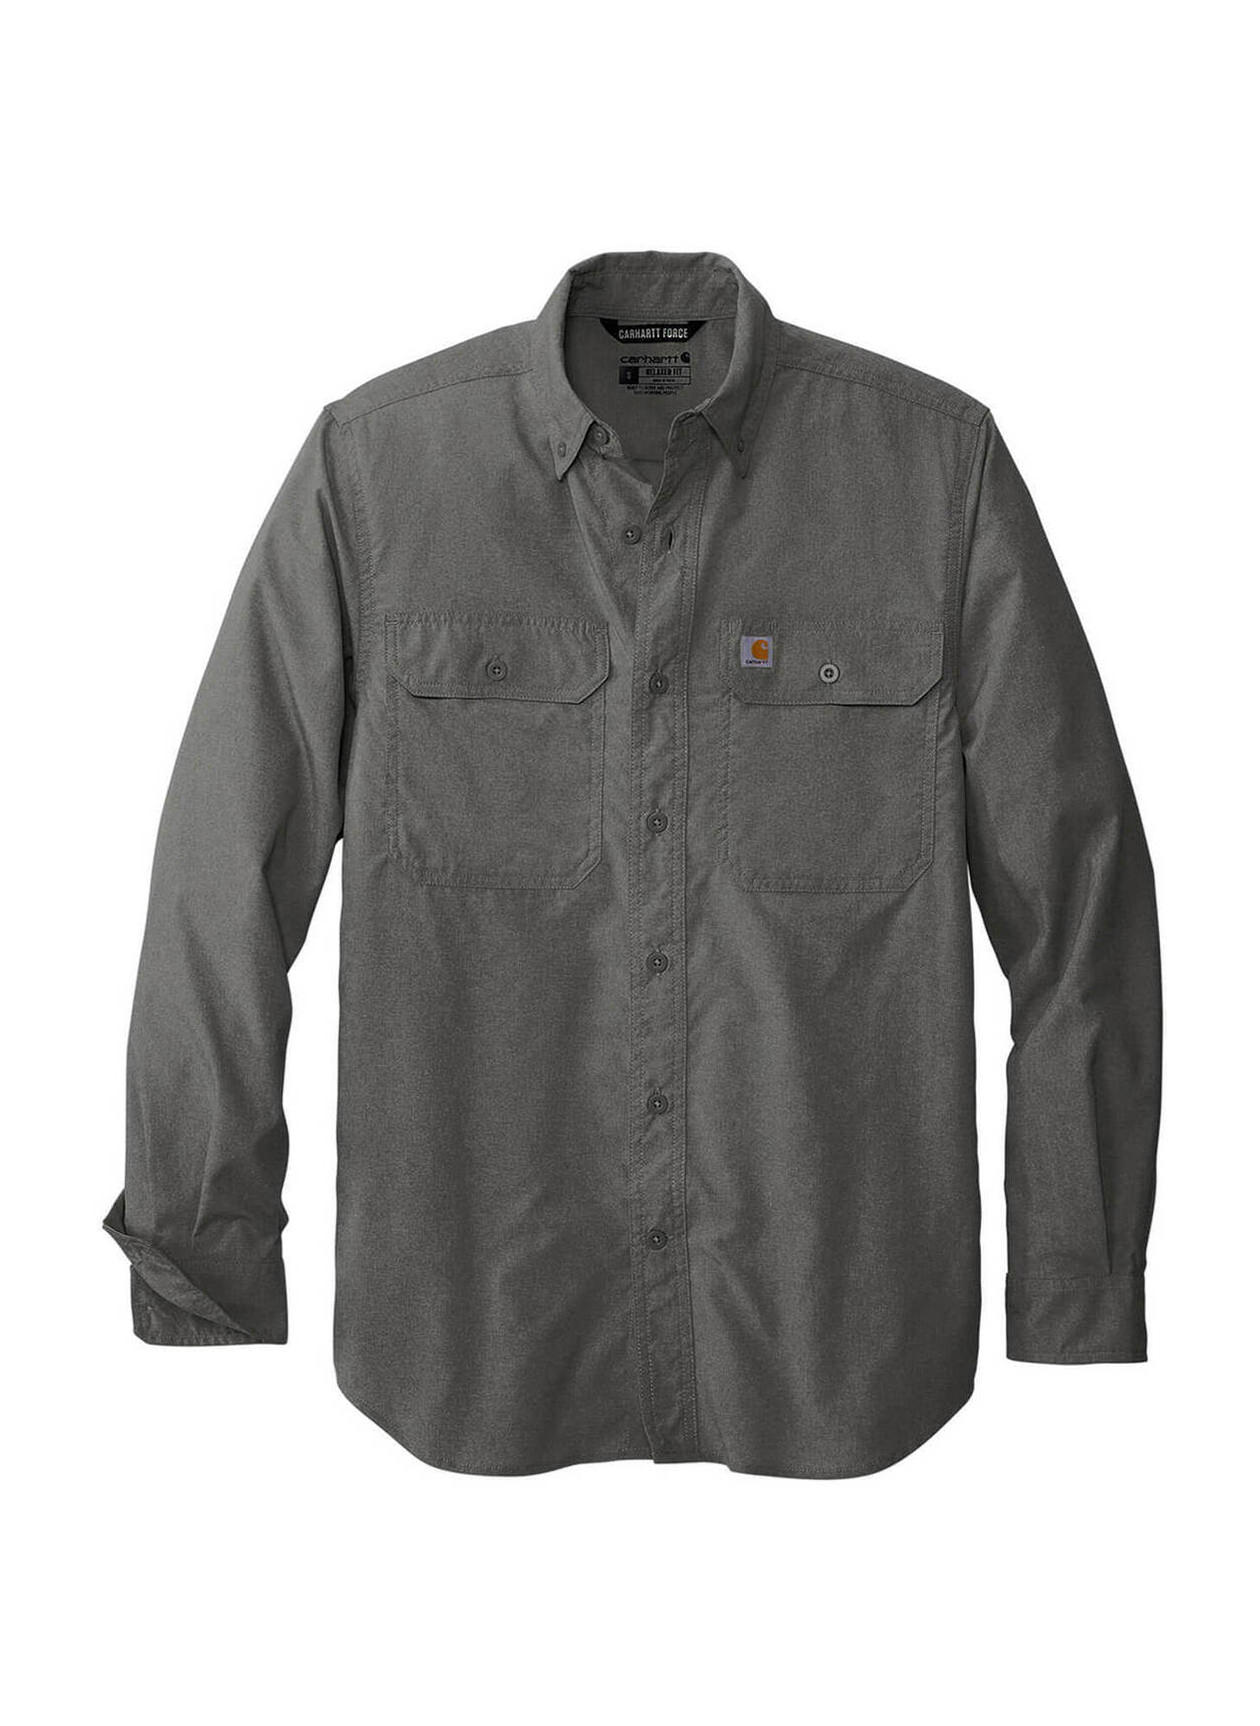 Custom Work Shirts Screen Printed Spyder Men's Black Transit Shirt Jacket